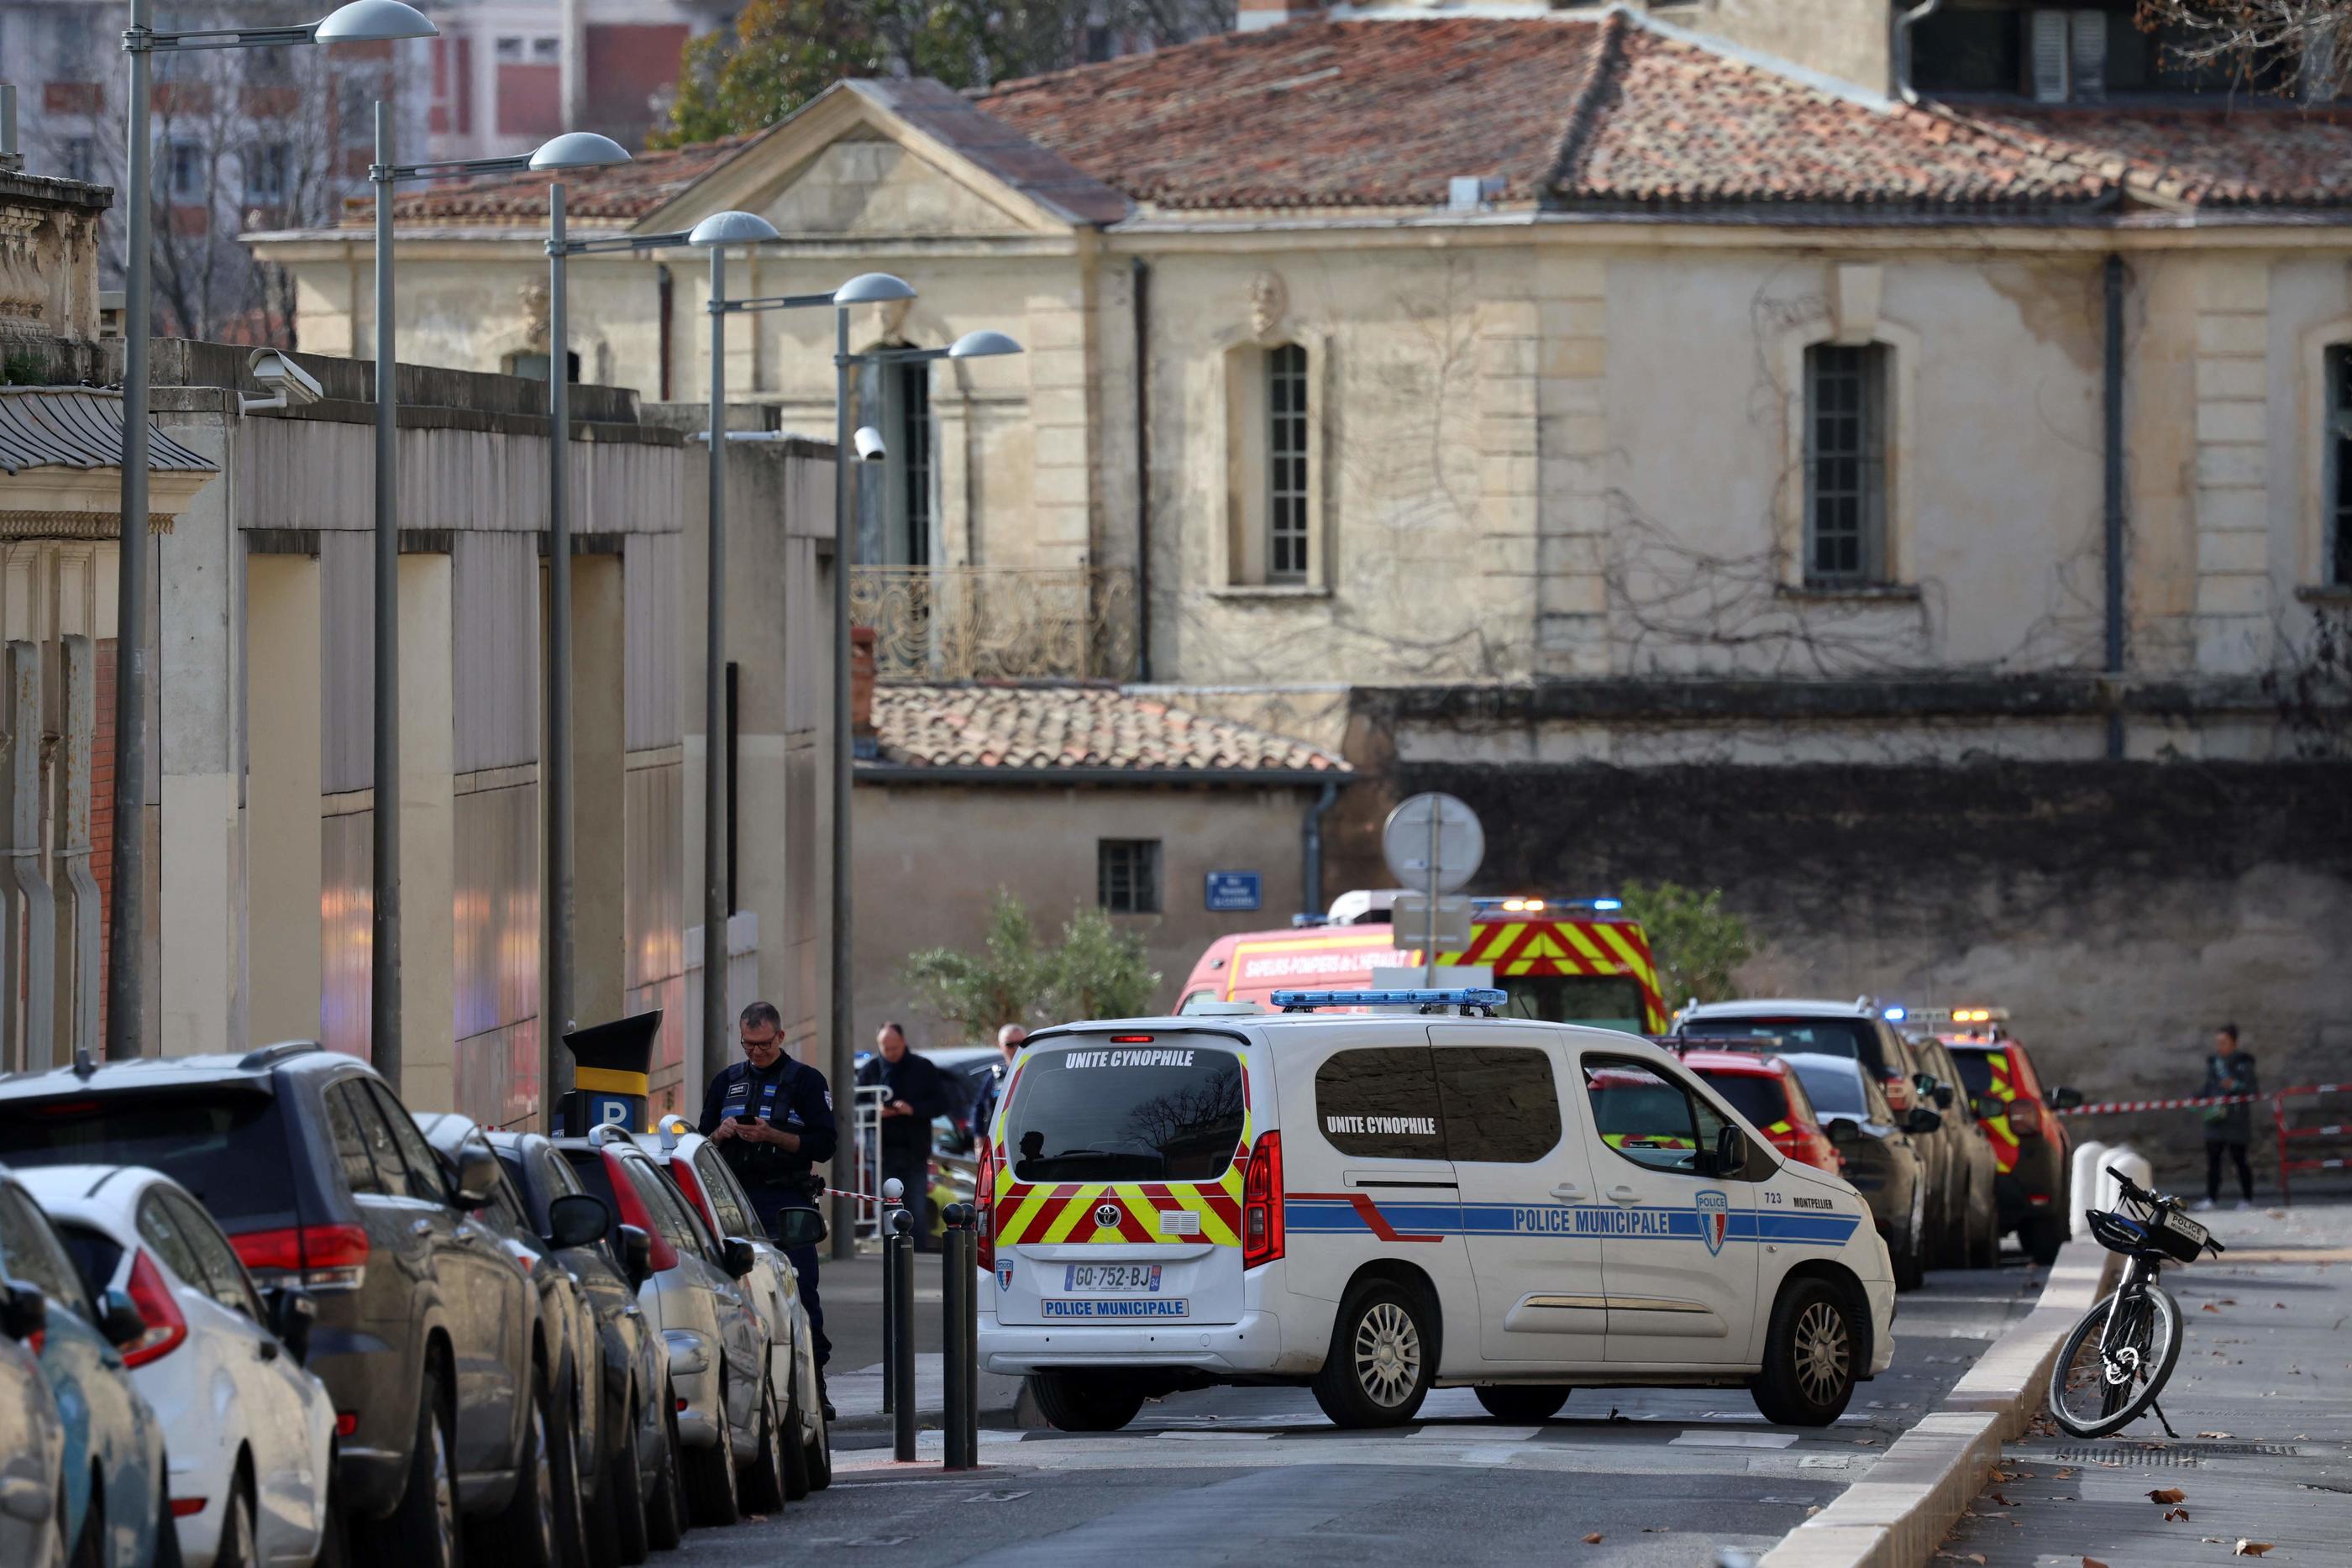 La police municipale se tient dans une zone bouclée autour du tribunal judiciaire de Montpellier. AFP/Pascal Guyot